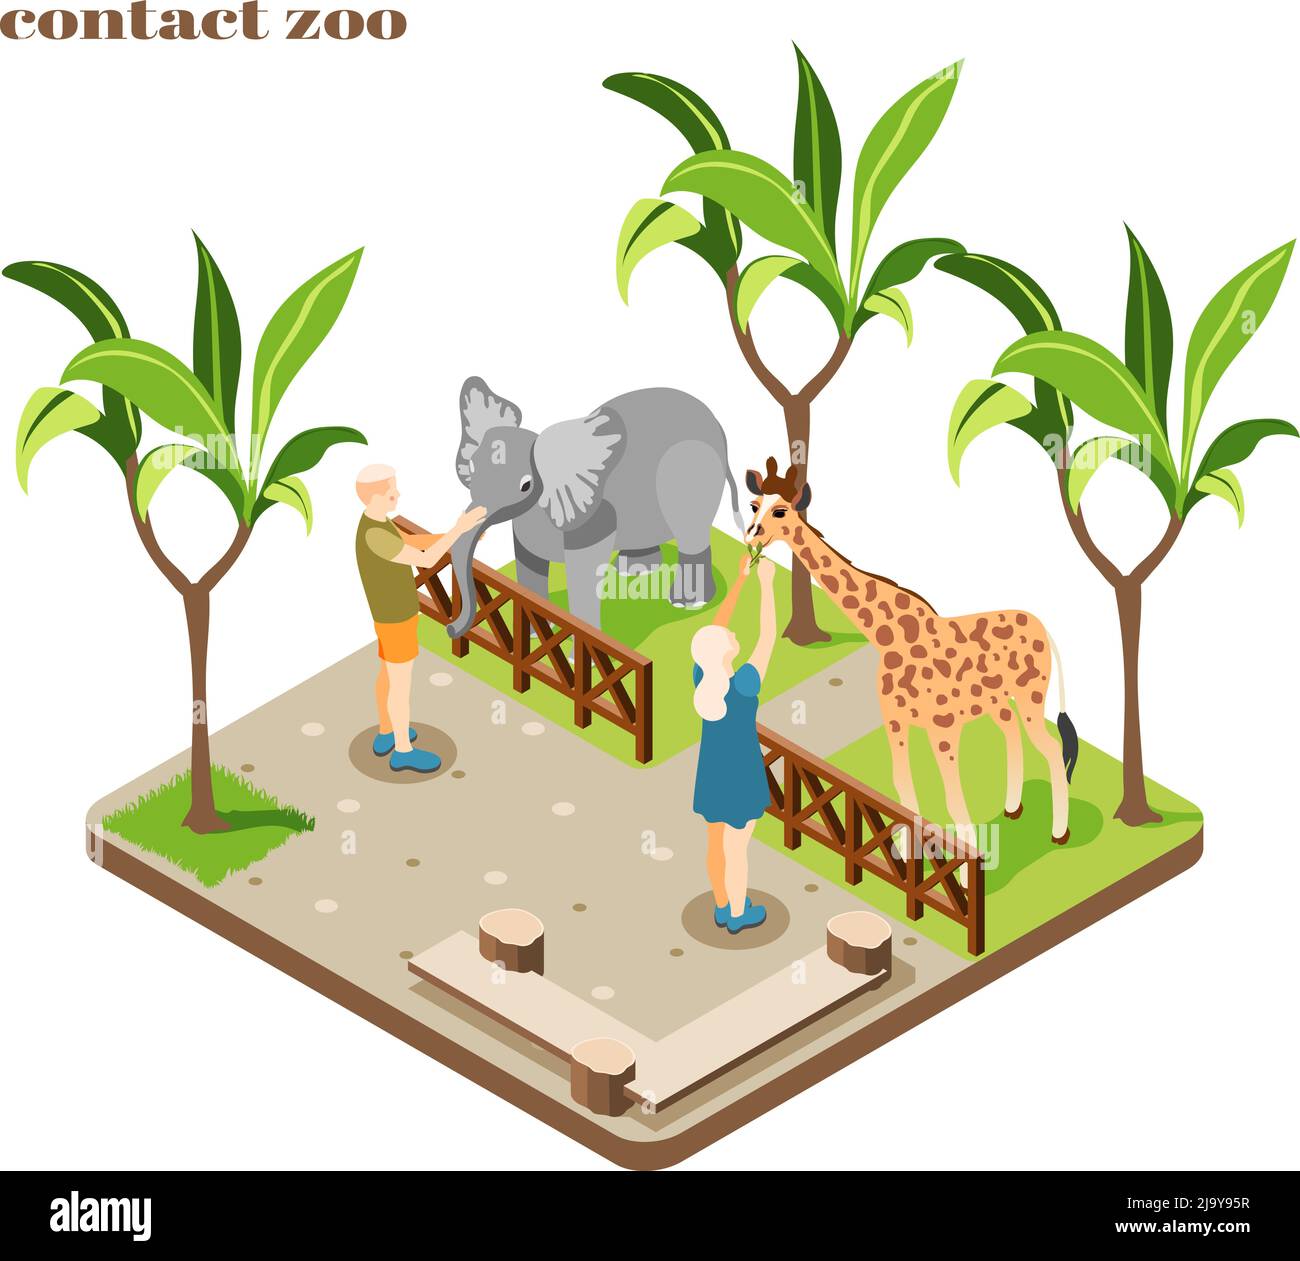 Composition de zoo de contact coloré et isométrique avec le personnel nourrir l'éléphant et la girafe illustration vectorielle Illustration de Vecteur